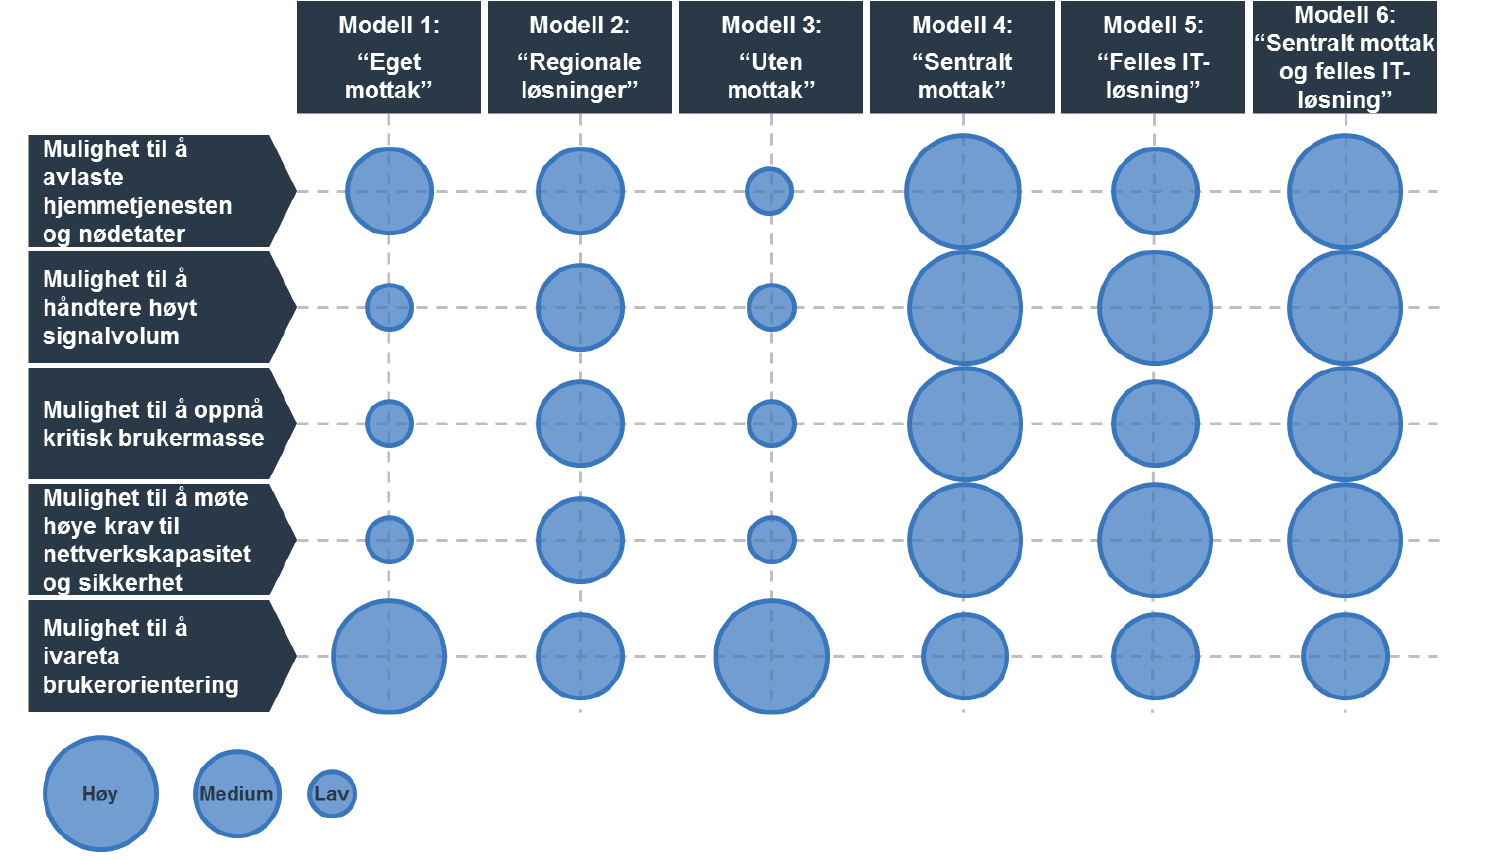 Rapporten skildrar 6 ulike modellar for organisering av alarmmottak, og anbefaler modell nr. 6, basert på kartleggingar og vurderingar skildra i rapporten.